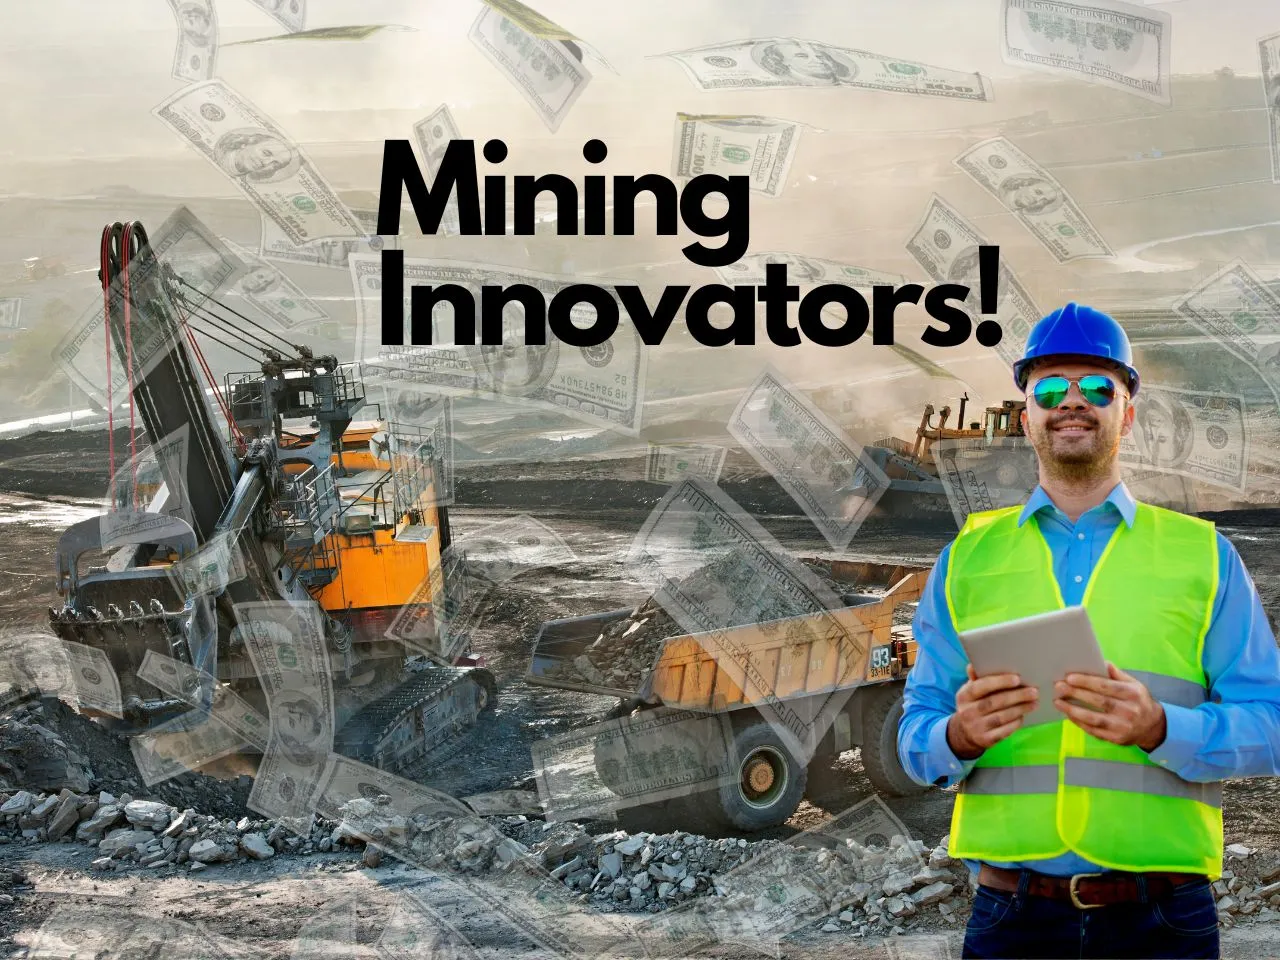 Mining Innovators